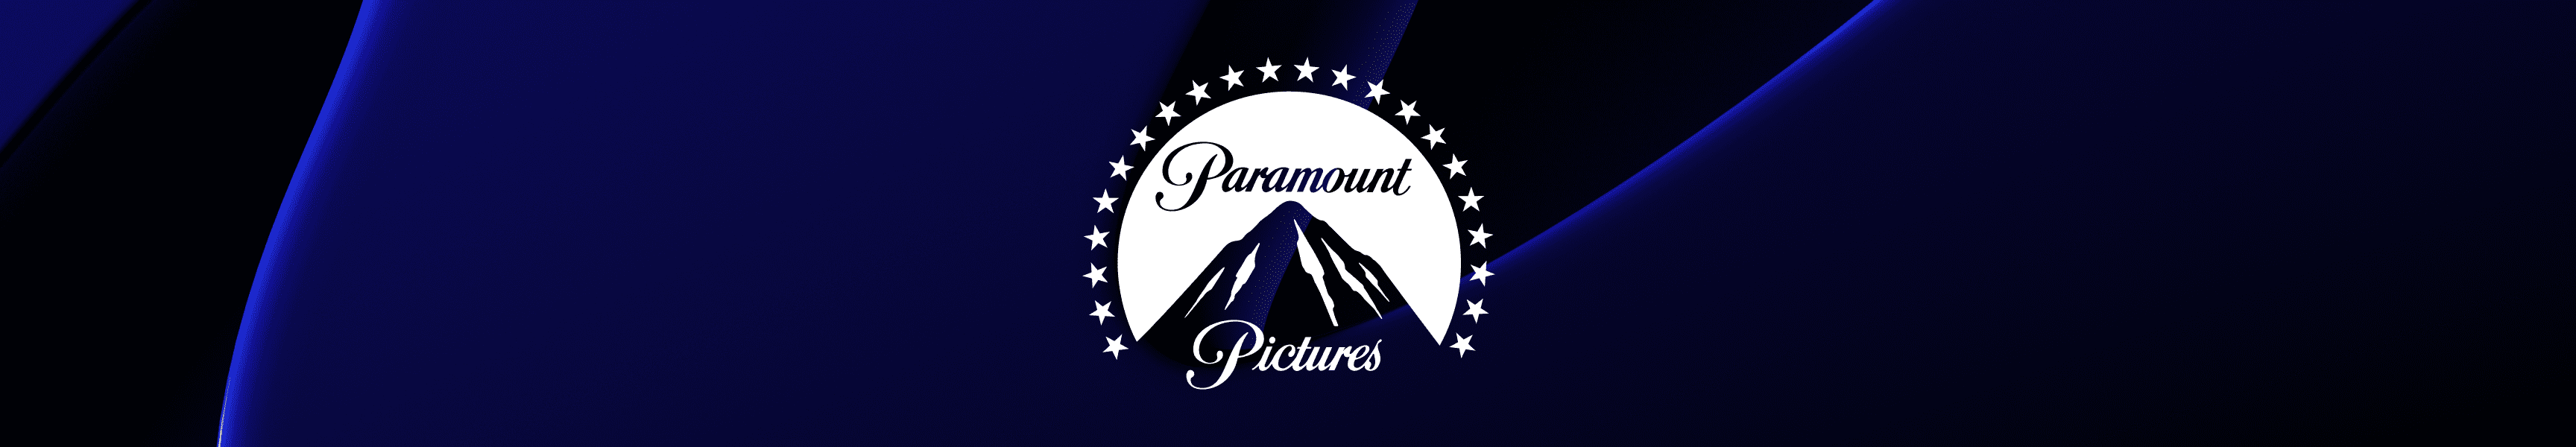 Paramount Las imágenes más vendidas